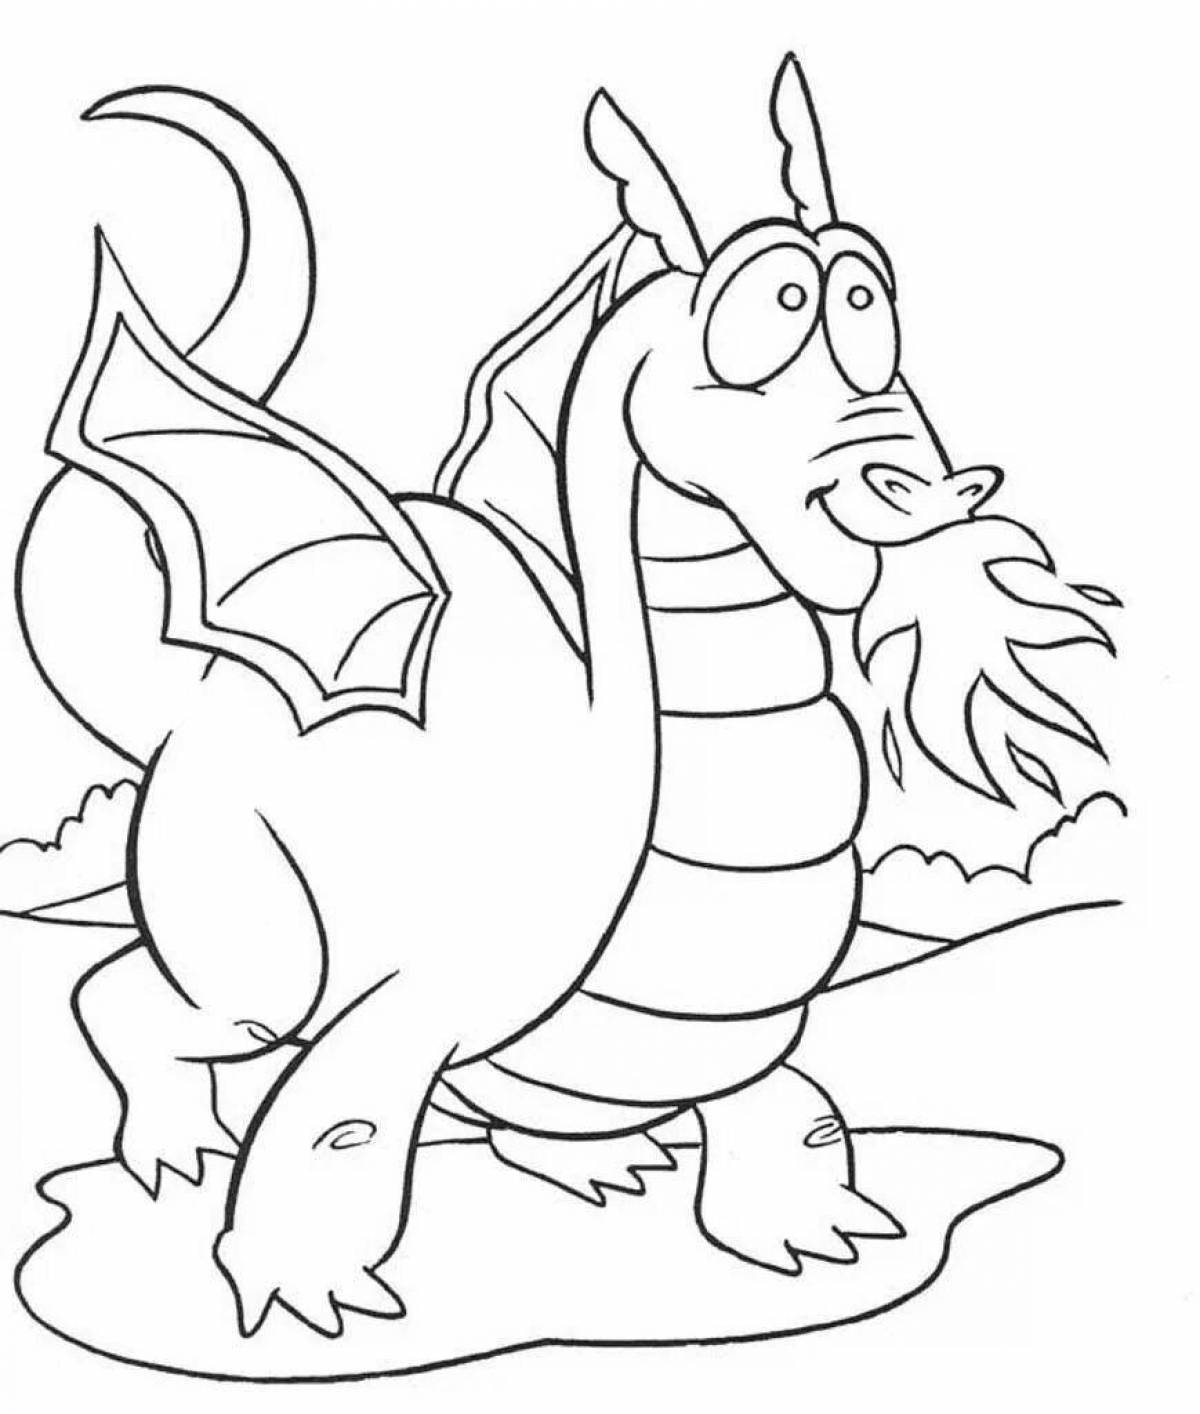 Экзотические раскраски драконы для детей 4-5 лет